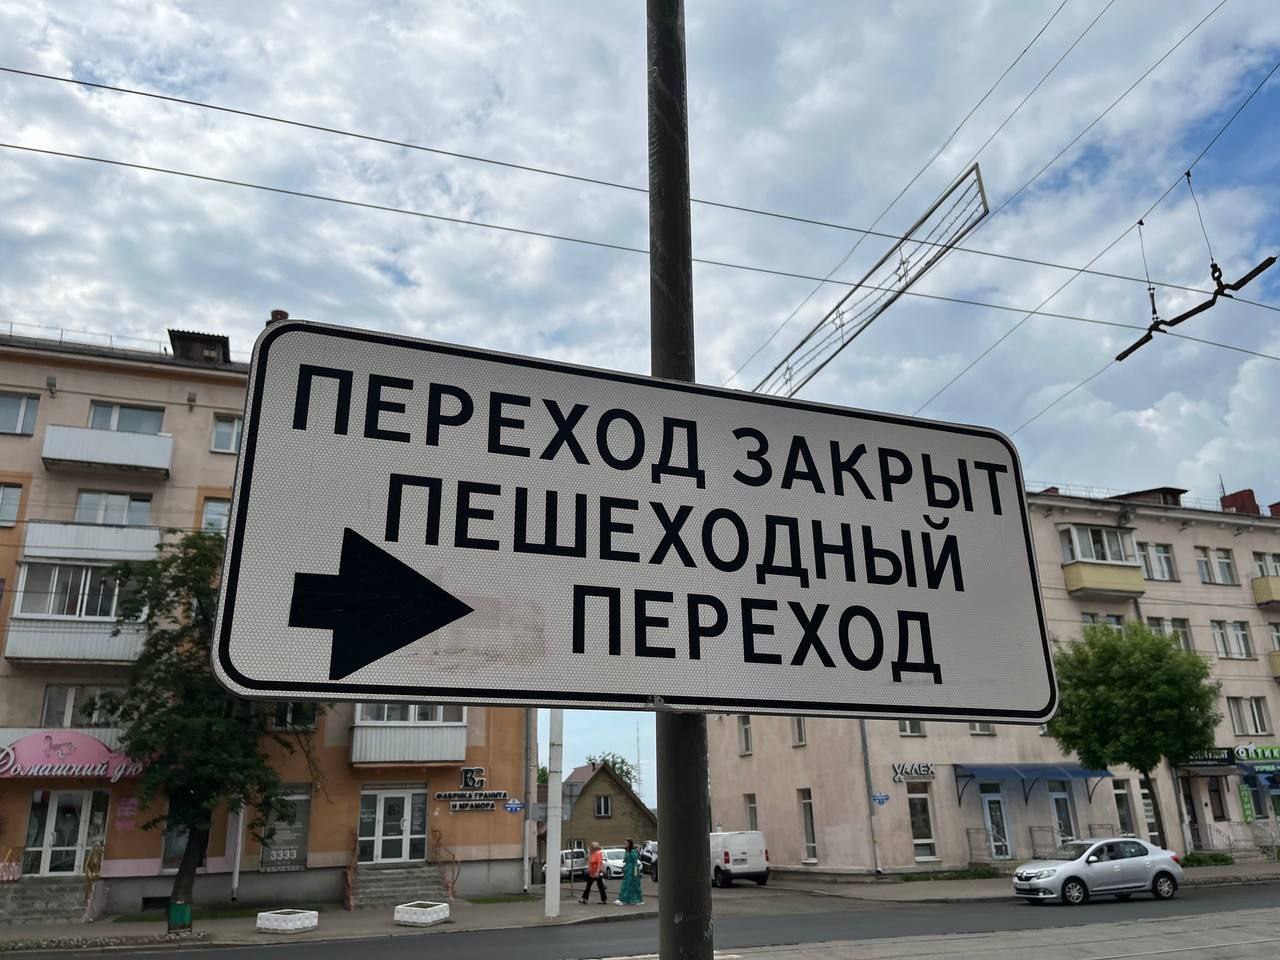 Убрали один из переходов на проспекте Черняховского в Витебске. Фото ГАИ